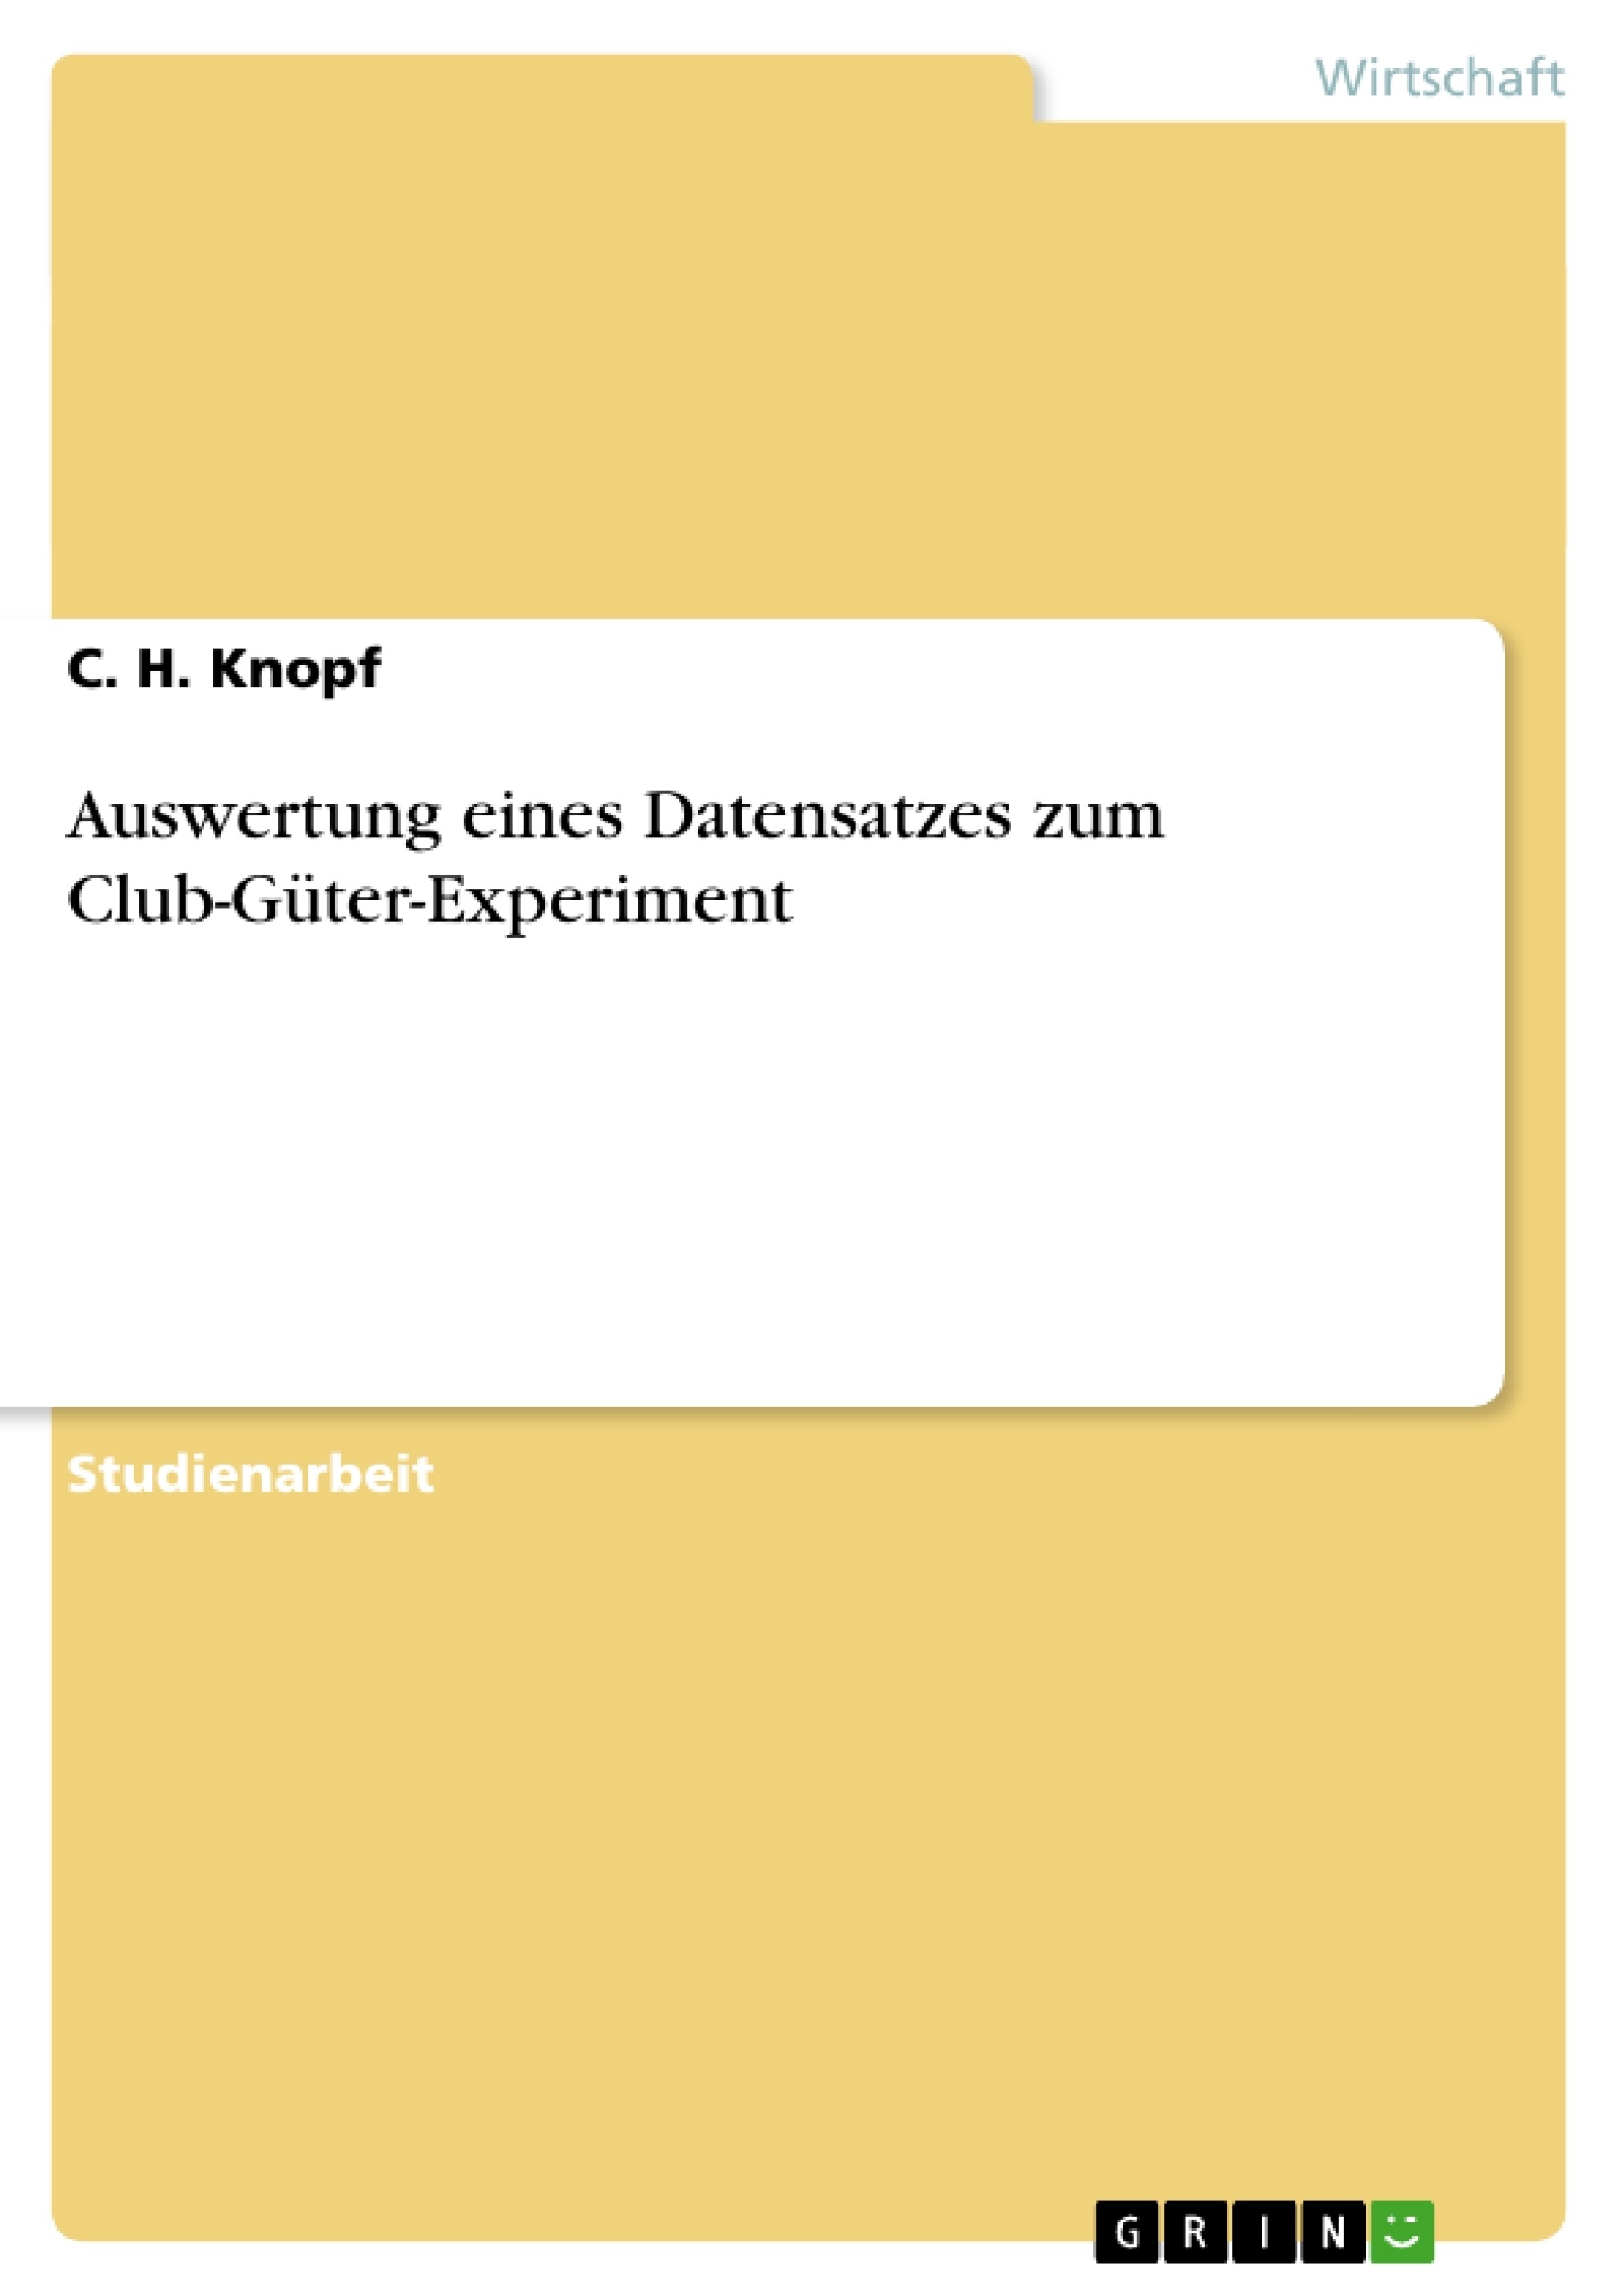 Title: Auswertung eines Datensatzes zum Club-Güter-Experiment